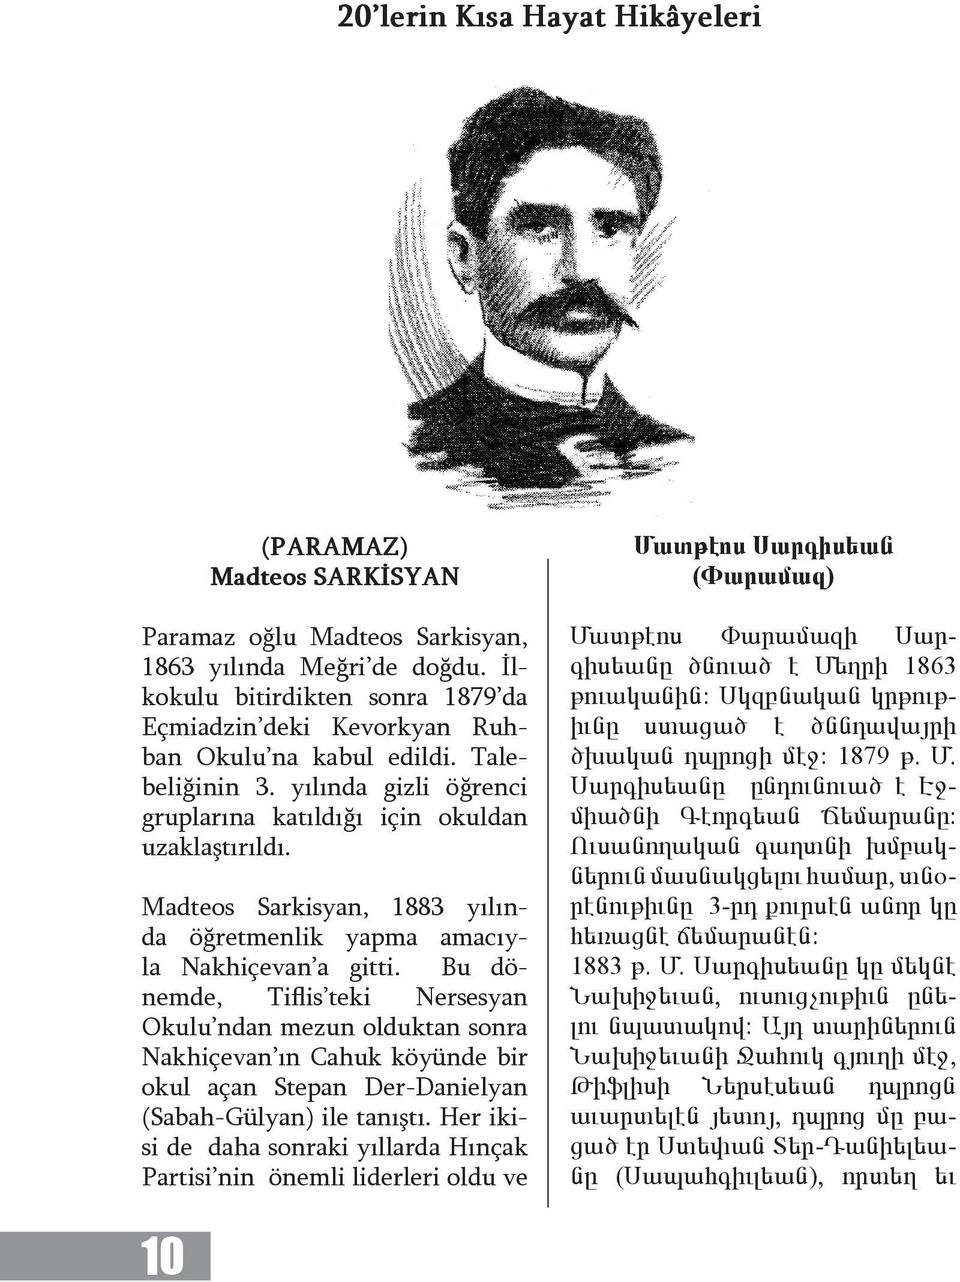 Madteos Sarkisyan, 1883 yılında öğretmenlik yapma amacıyla Nakhiçevan a gitti.